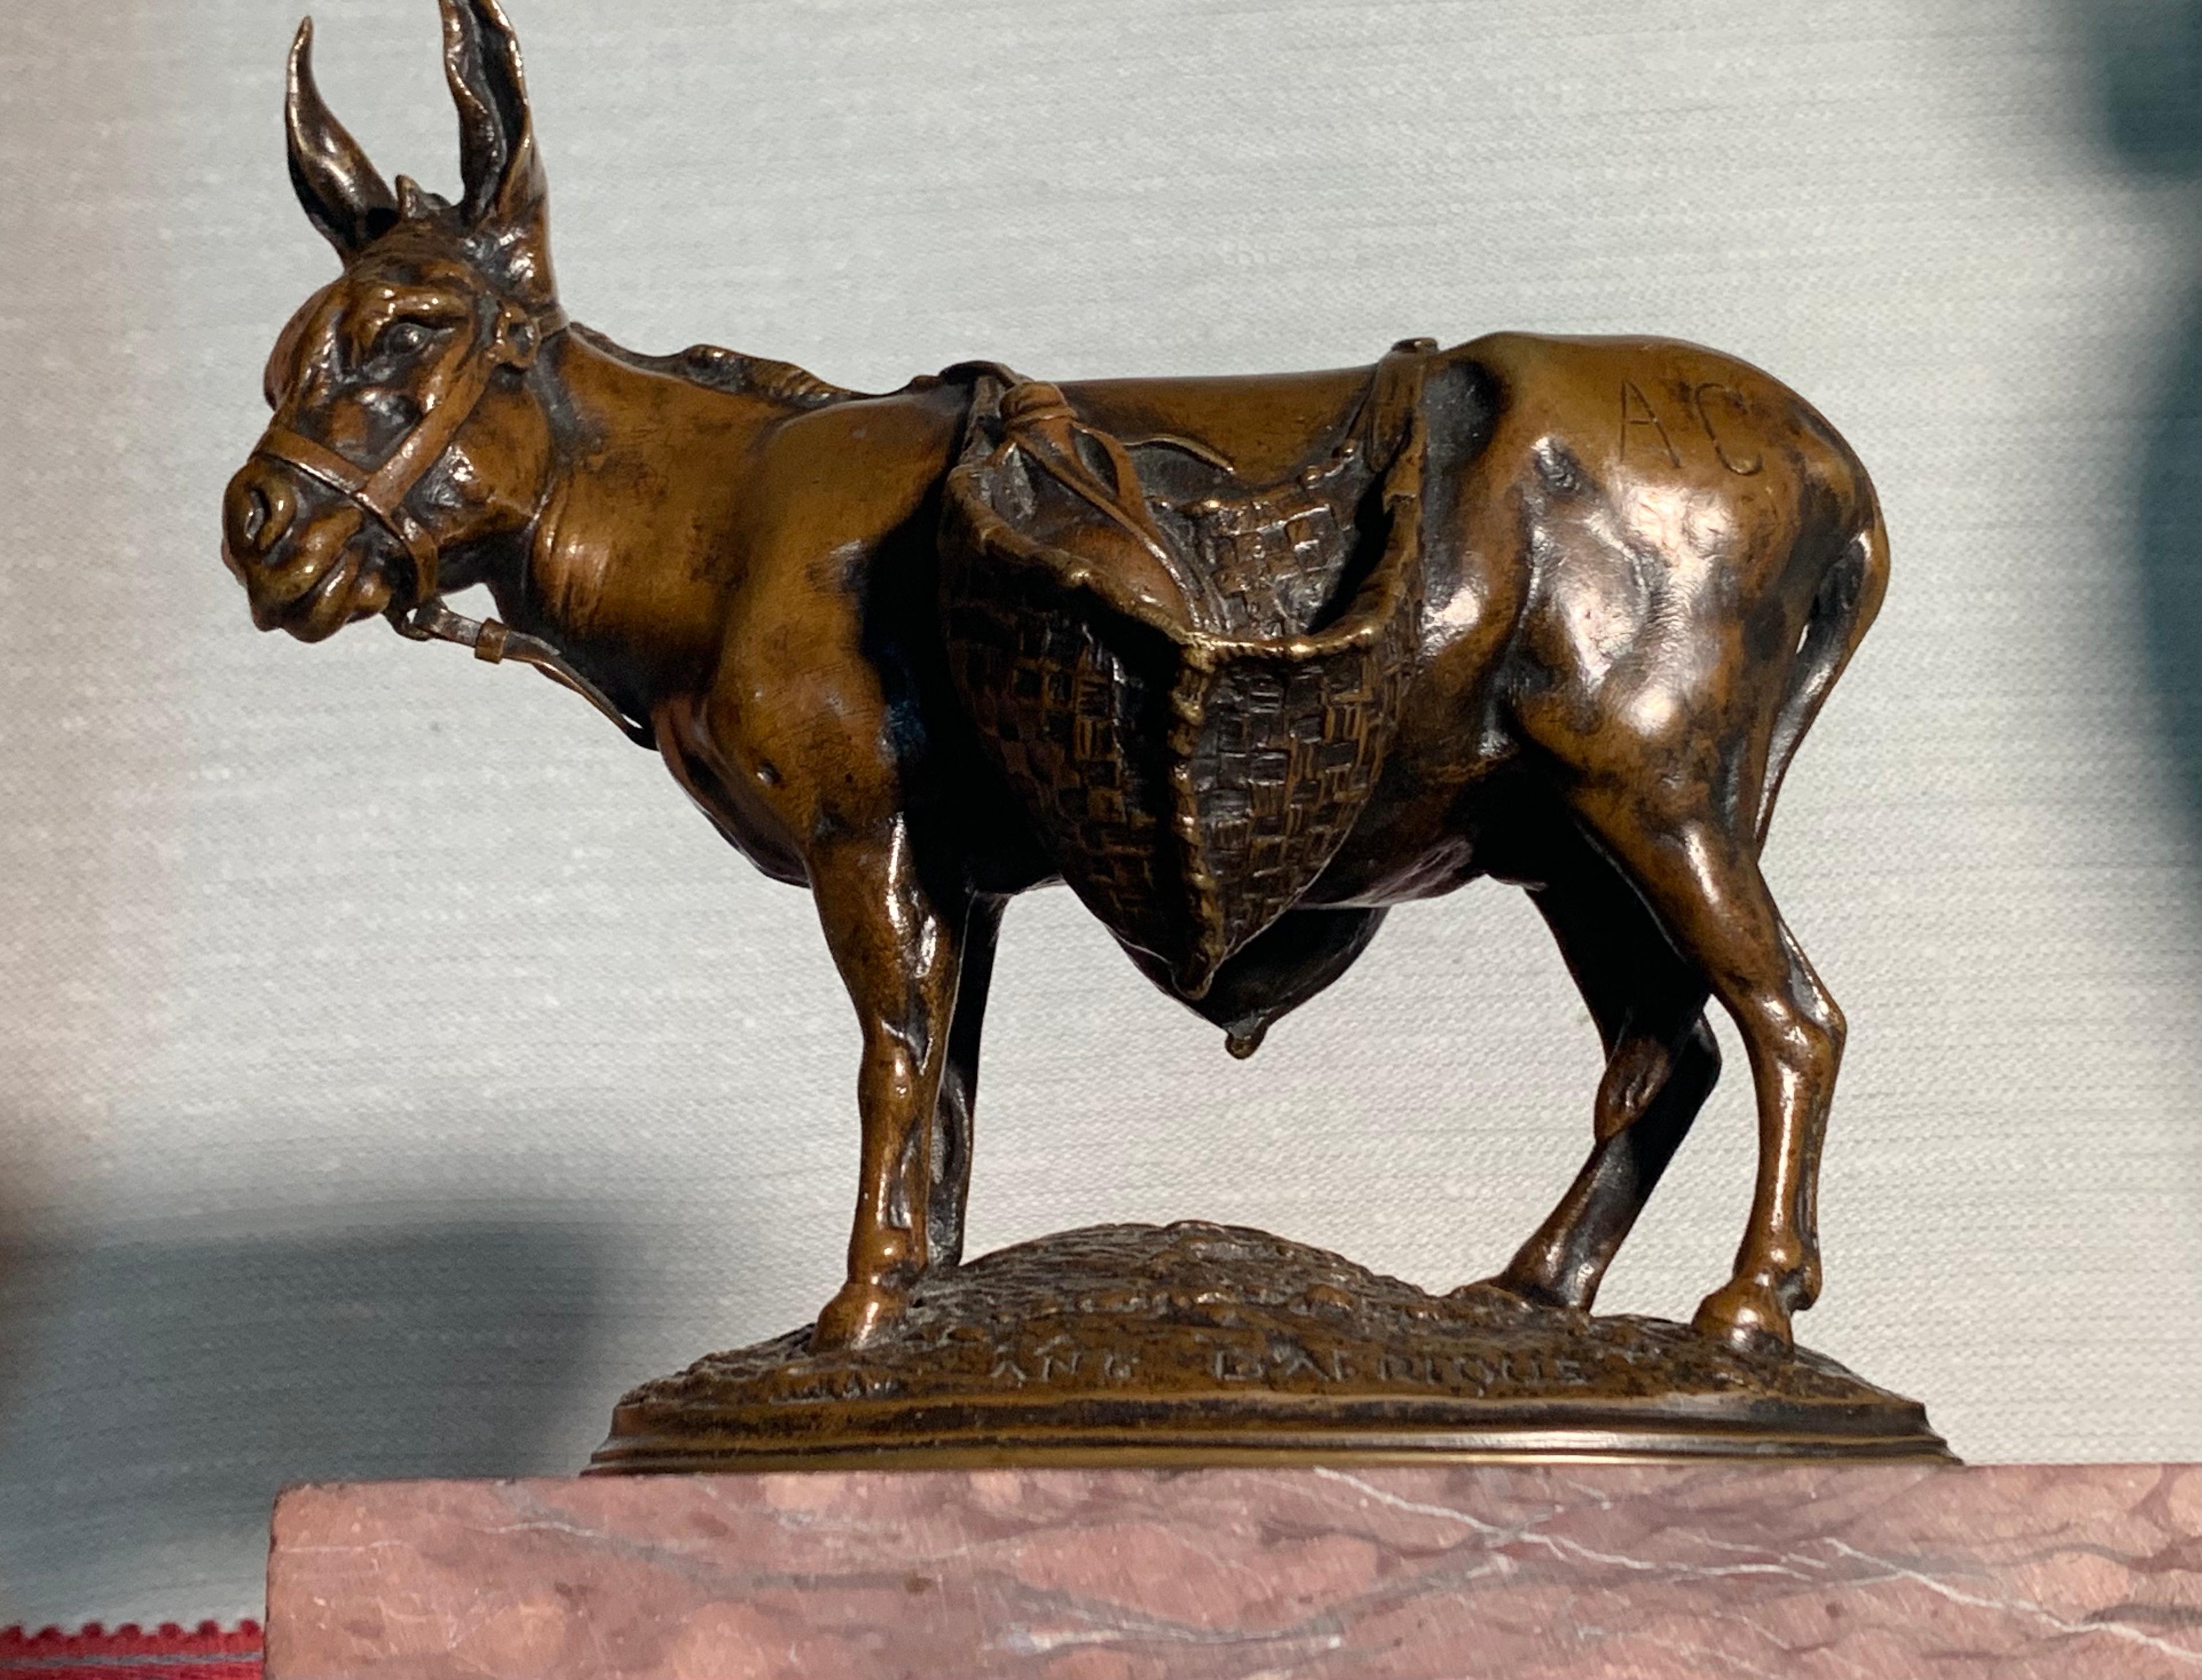 Charmante kleine Bronze des großen Tierbildhauers Auguste-Nicolas Cain, seitlich signiert A.Cain, beschriftet Ane d'Afrique (Esel aus Afrika)  und Susse Fres  auf der Terrasse. Der Esel ist mit seinen geflochtenen Körben beladen in einer lebendigen